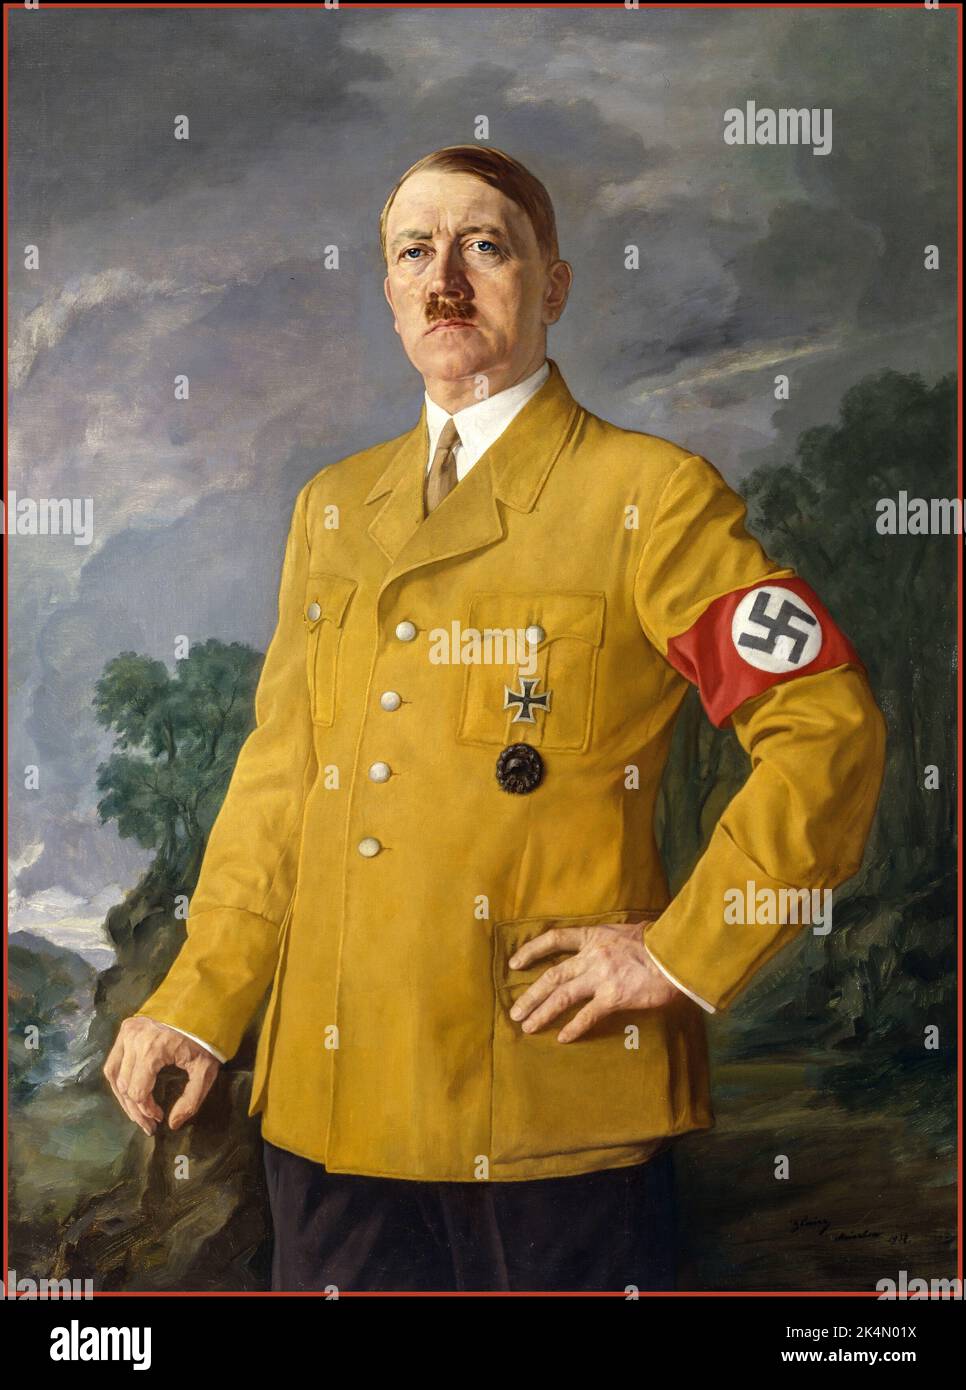 Adolf Hitler HUILE DE PEINTURE Der Führer Gemälde Adolf Hitler Portrait Peinture d'Adolf Hitler en uniforme avec le brassard de swastika par Heinrich Knirr peintre allemand né en Autriche 1937 Banque D'Images